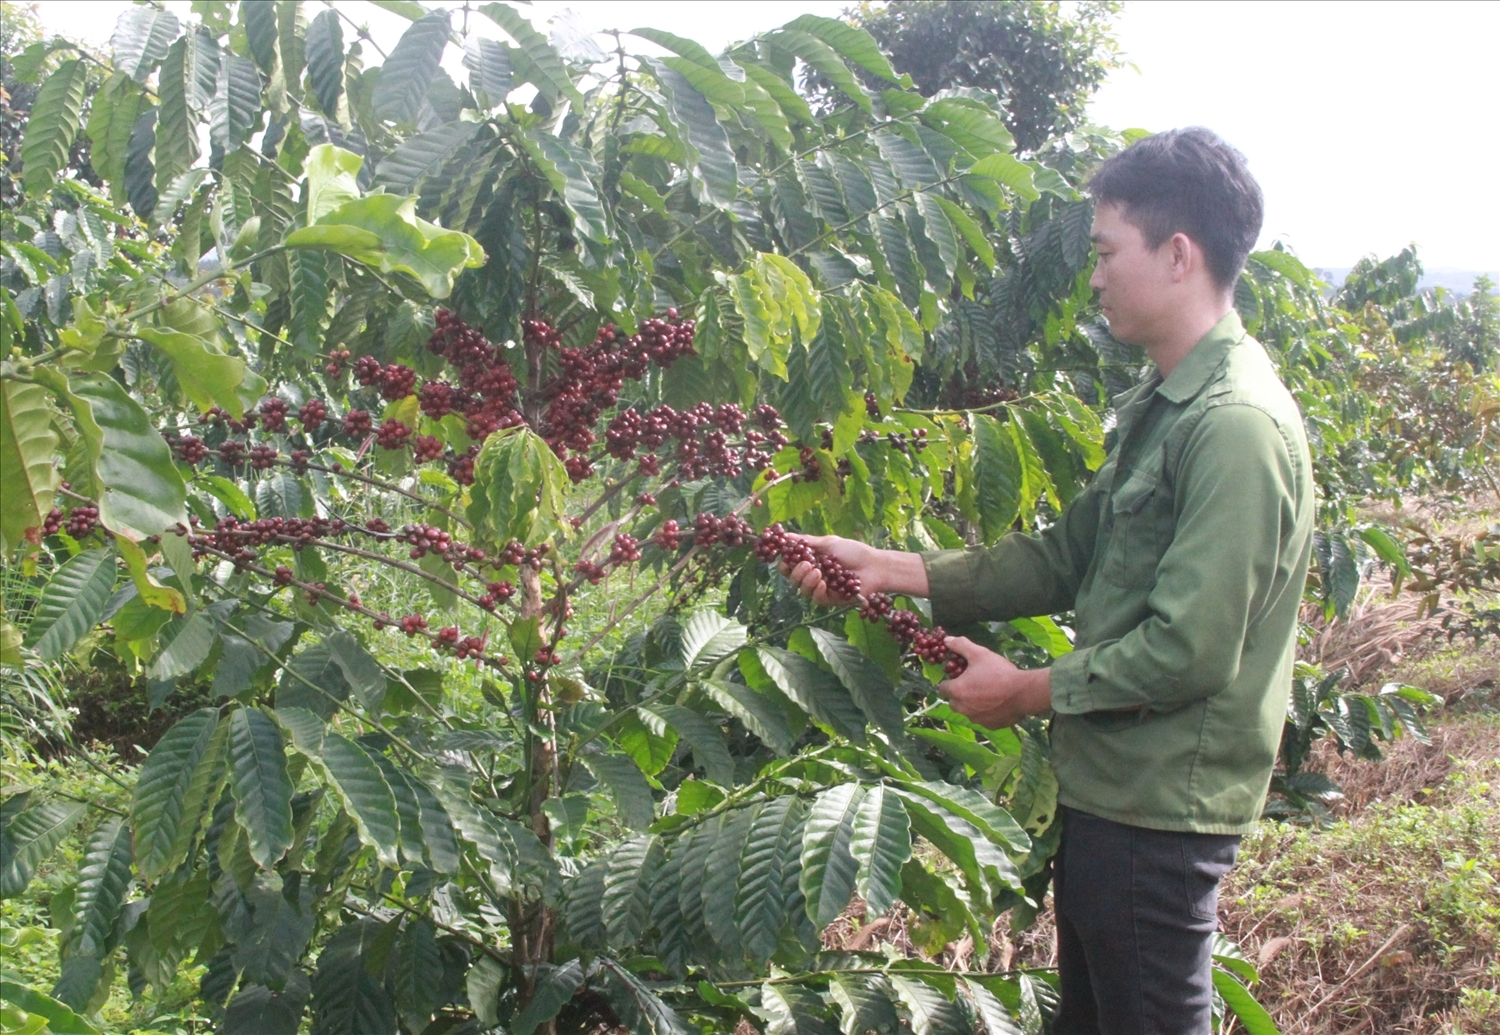 Hôm nay giá cà phê tại các vùng trồng trọng điểm trong nước giữ ổn định so với ngày hôm qua.